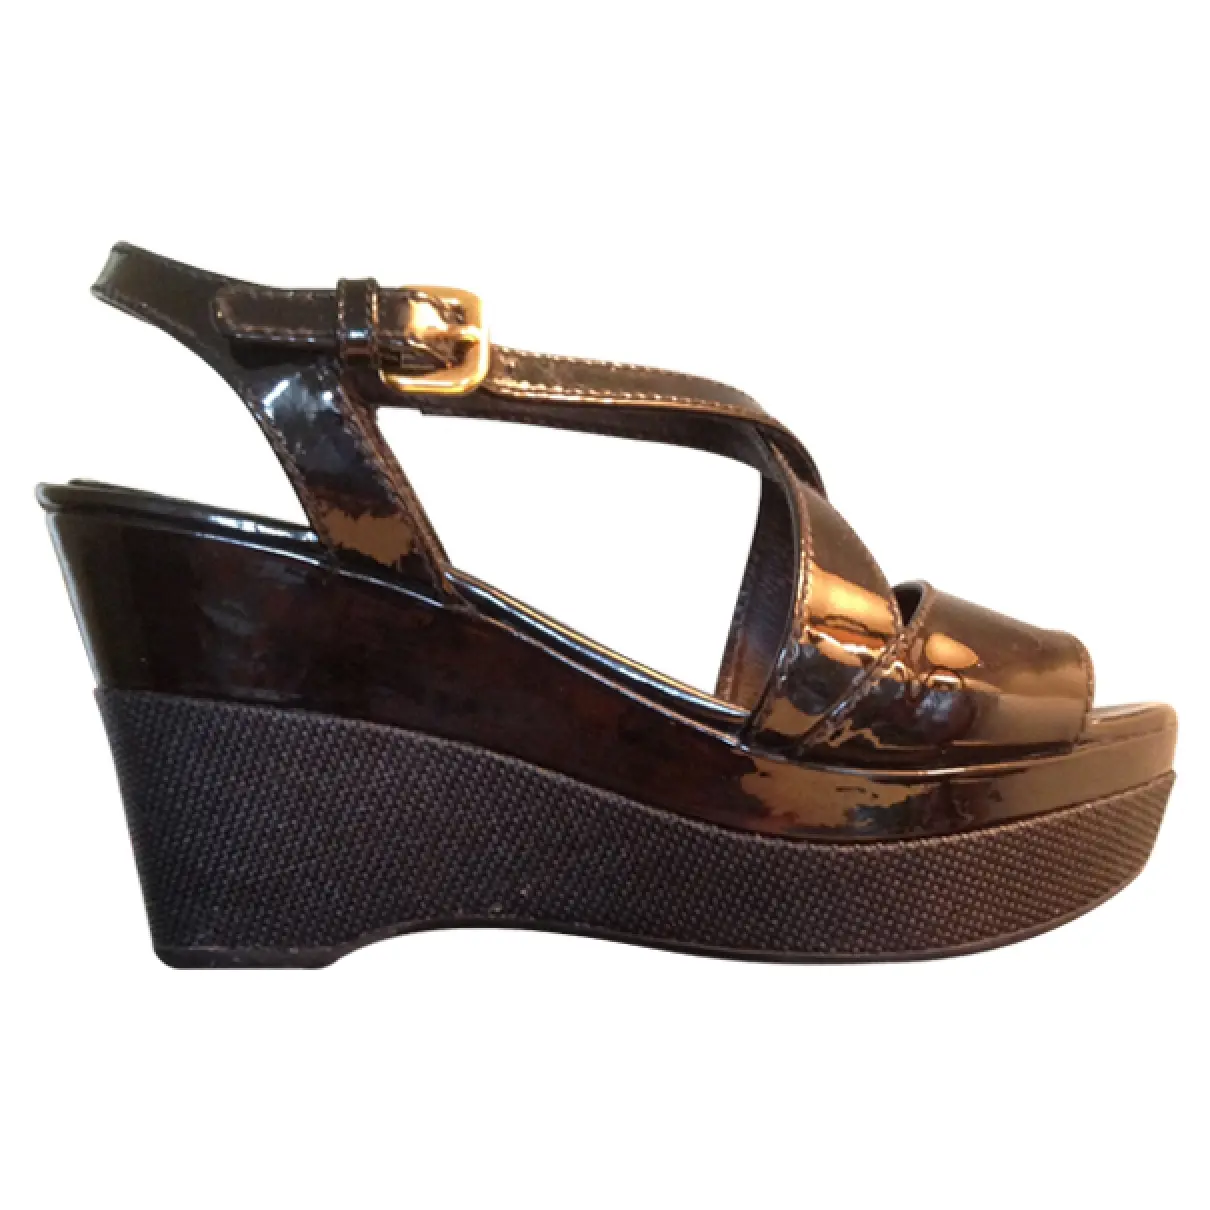 Black Patent leather Sandals Prada